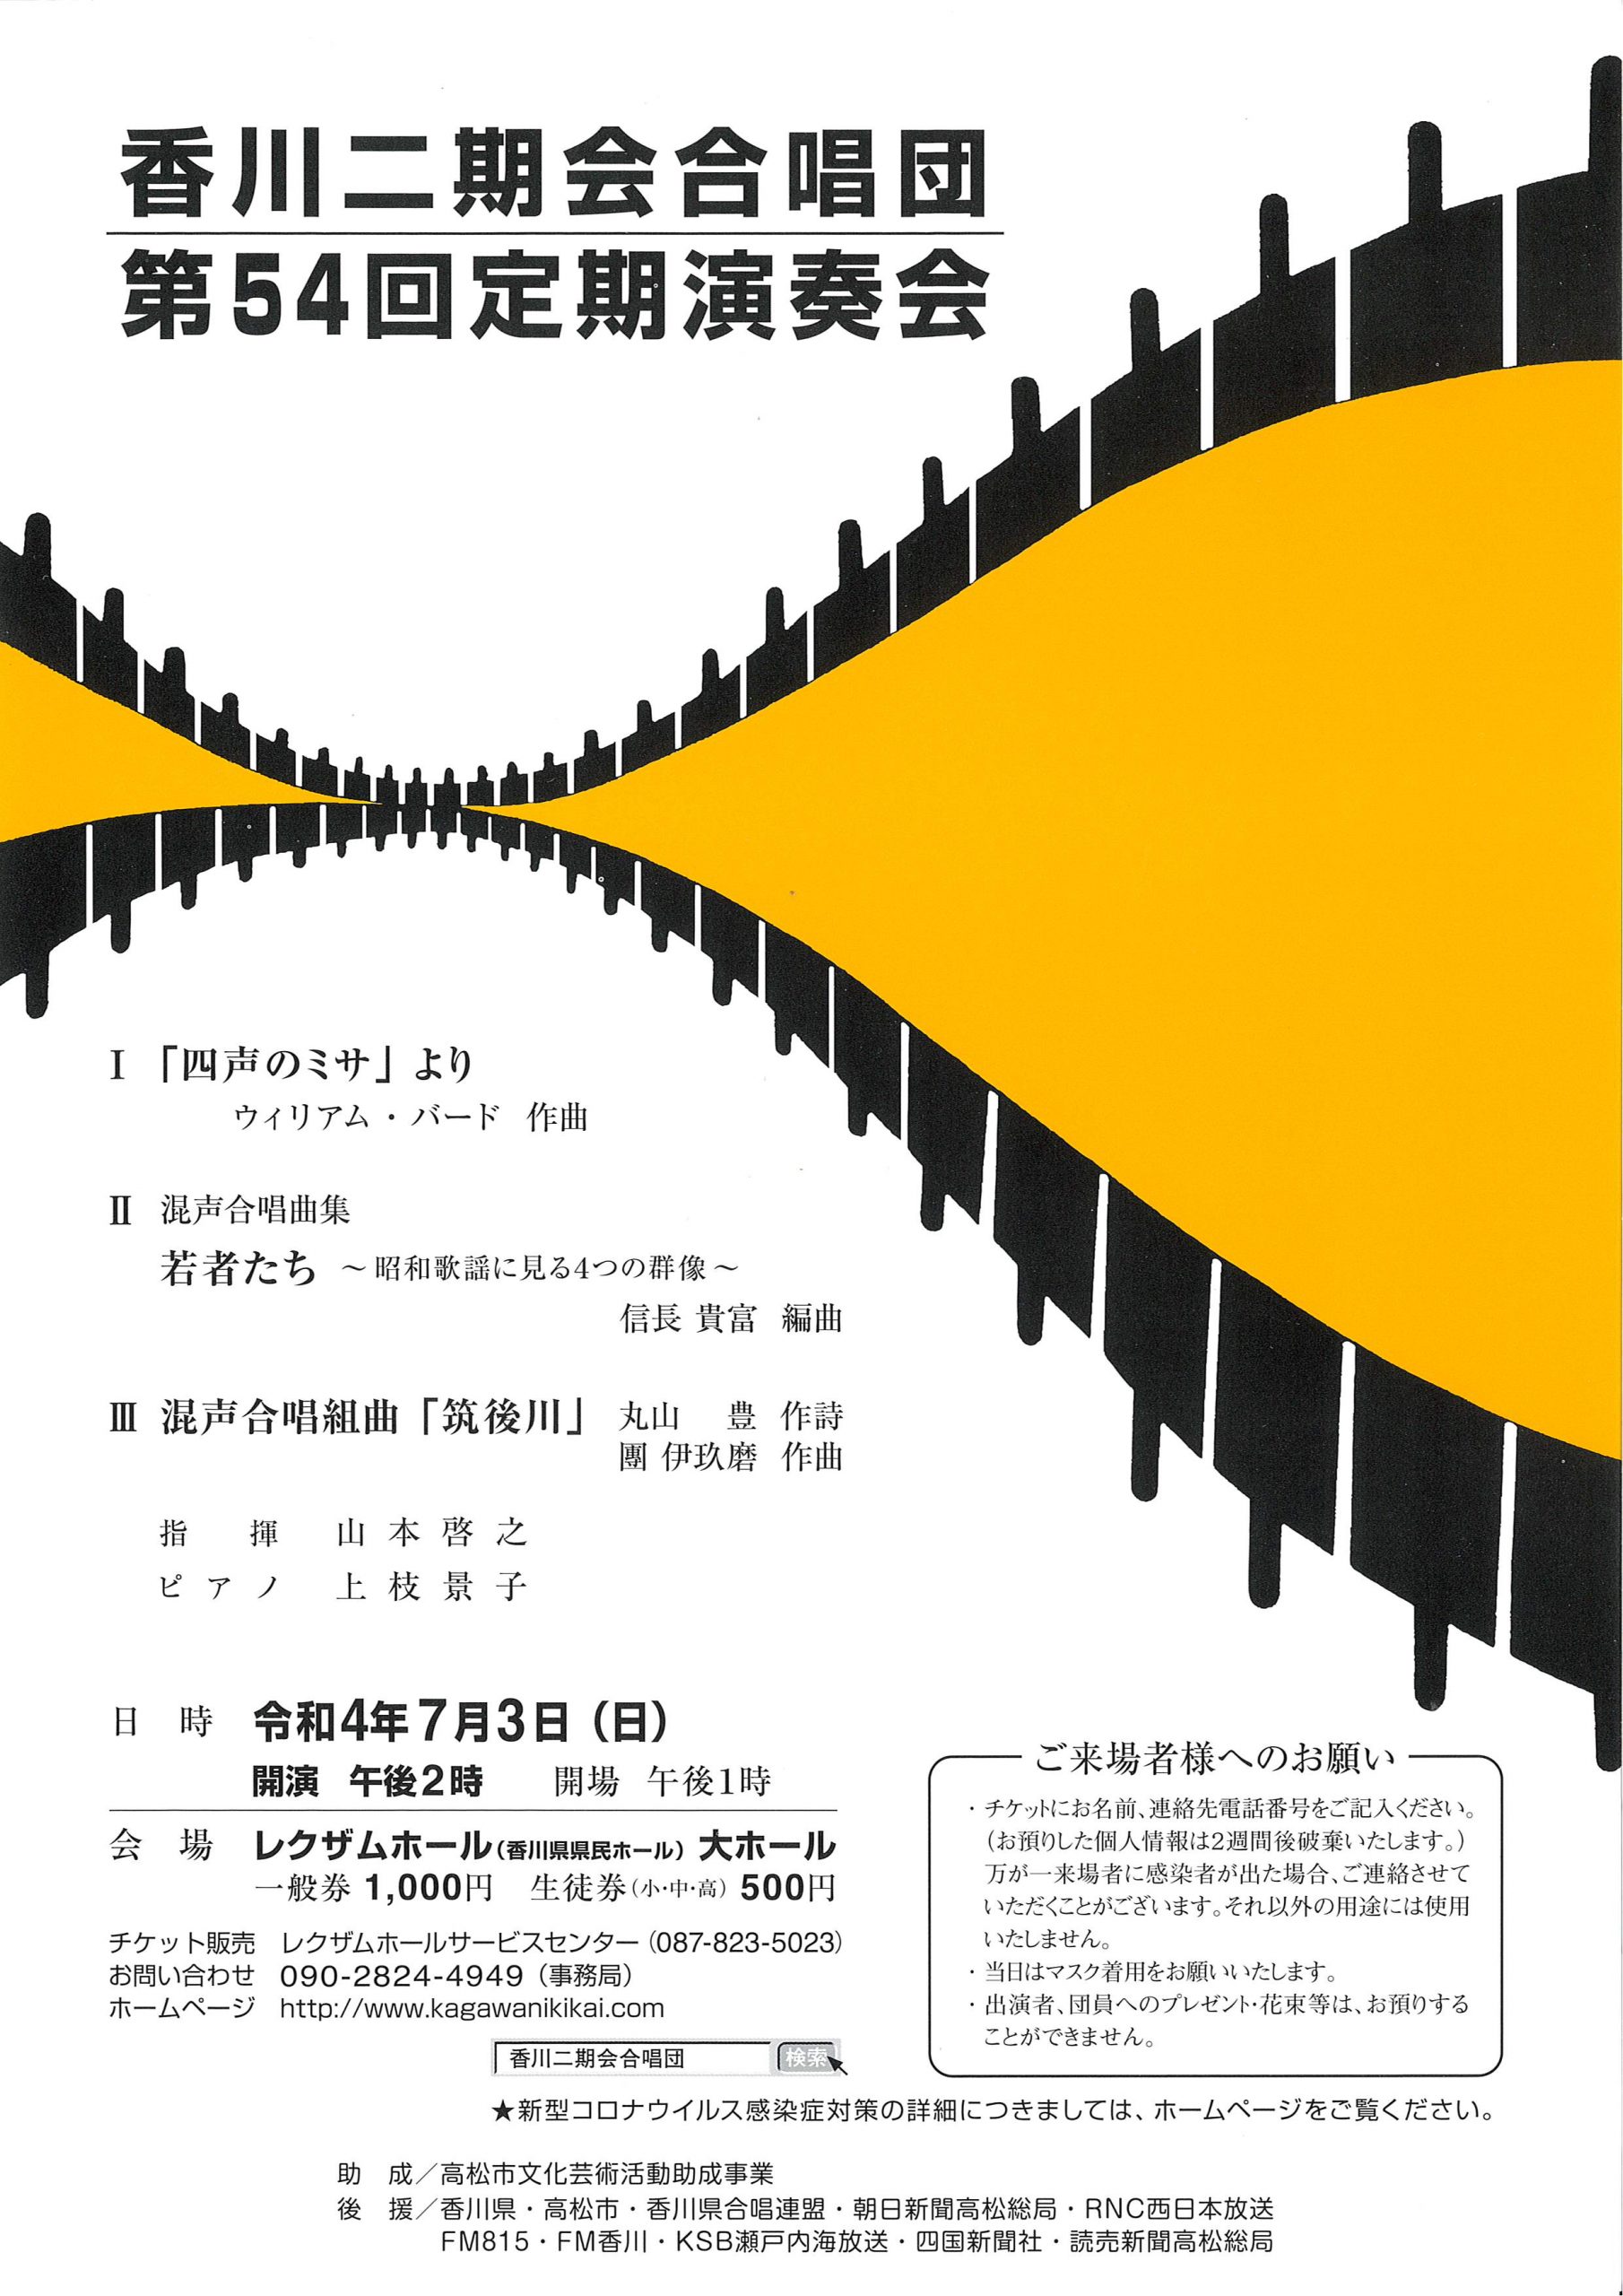 香川二期会合唱団 第54回定期演奏会